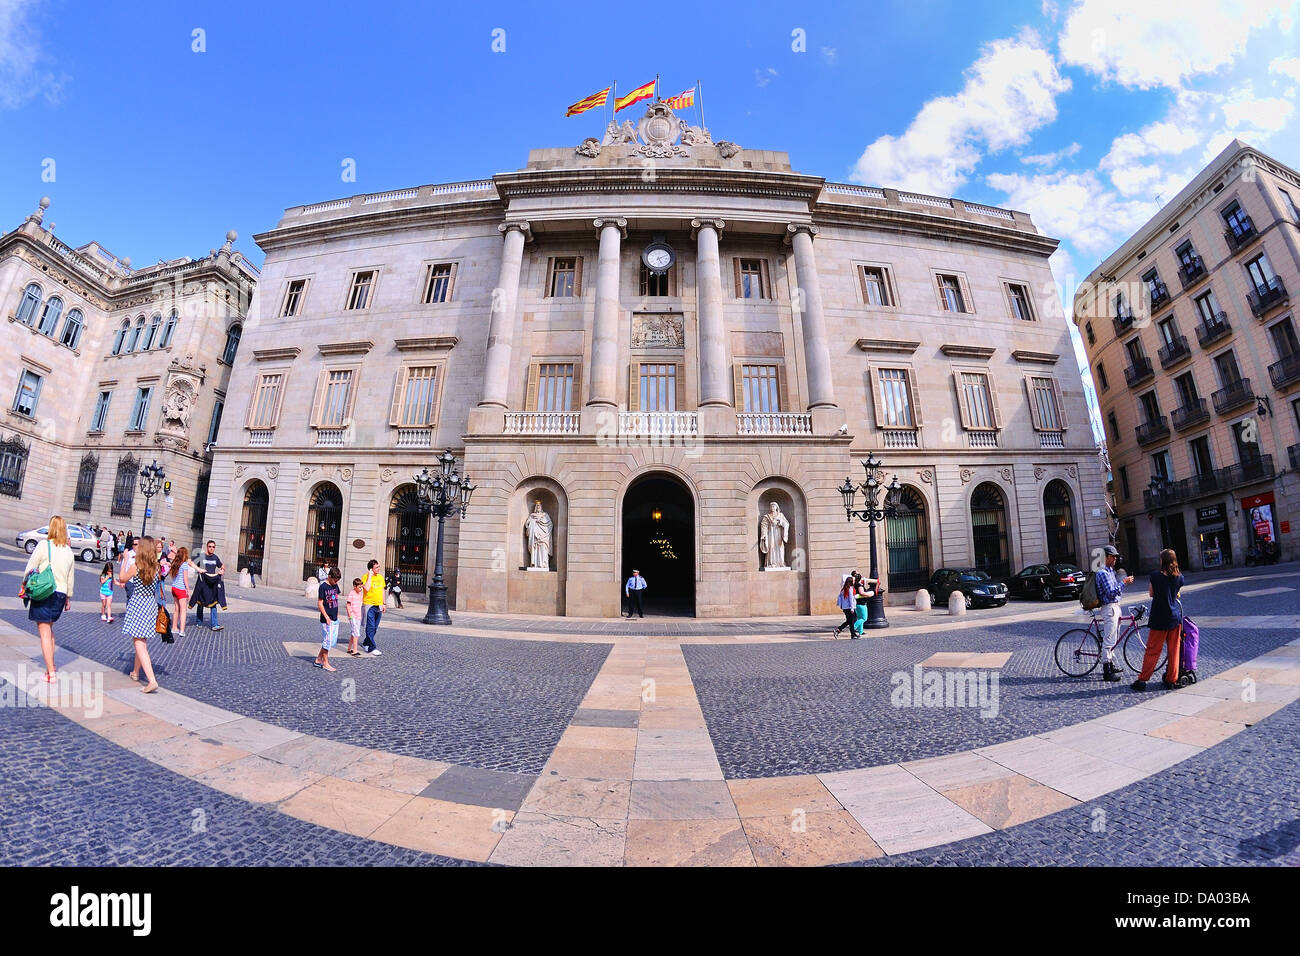 BARCELONA - 4 Mai: Rat der Stadt am 4. Mai 2013 in Barcelona, Spanien. Der Rat hat seinen Hauptsitz in St. James es Square. Stockfoto